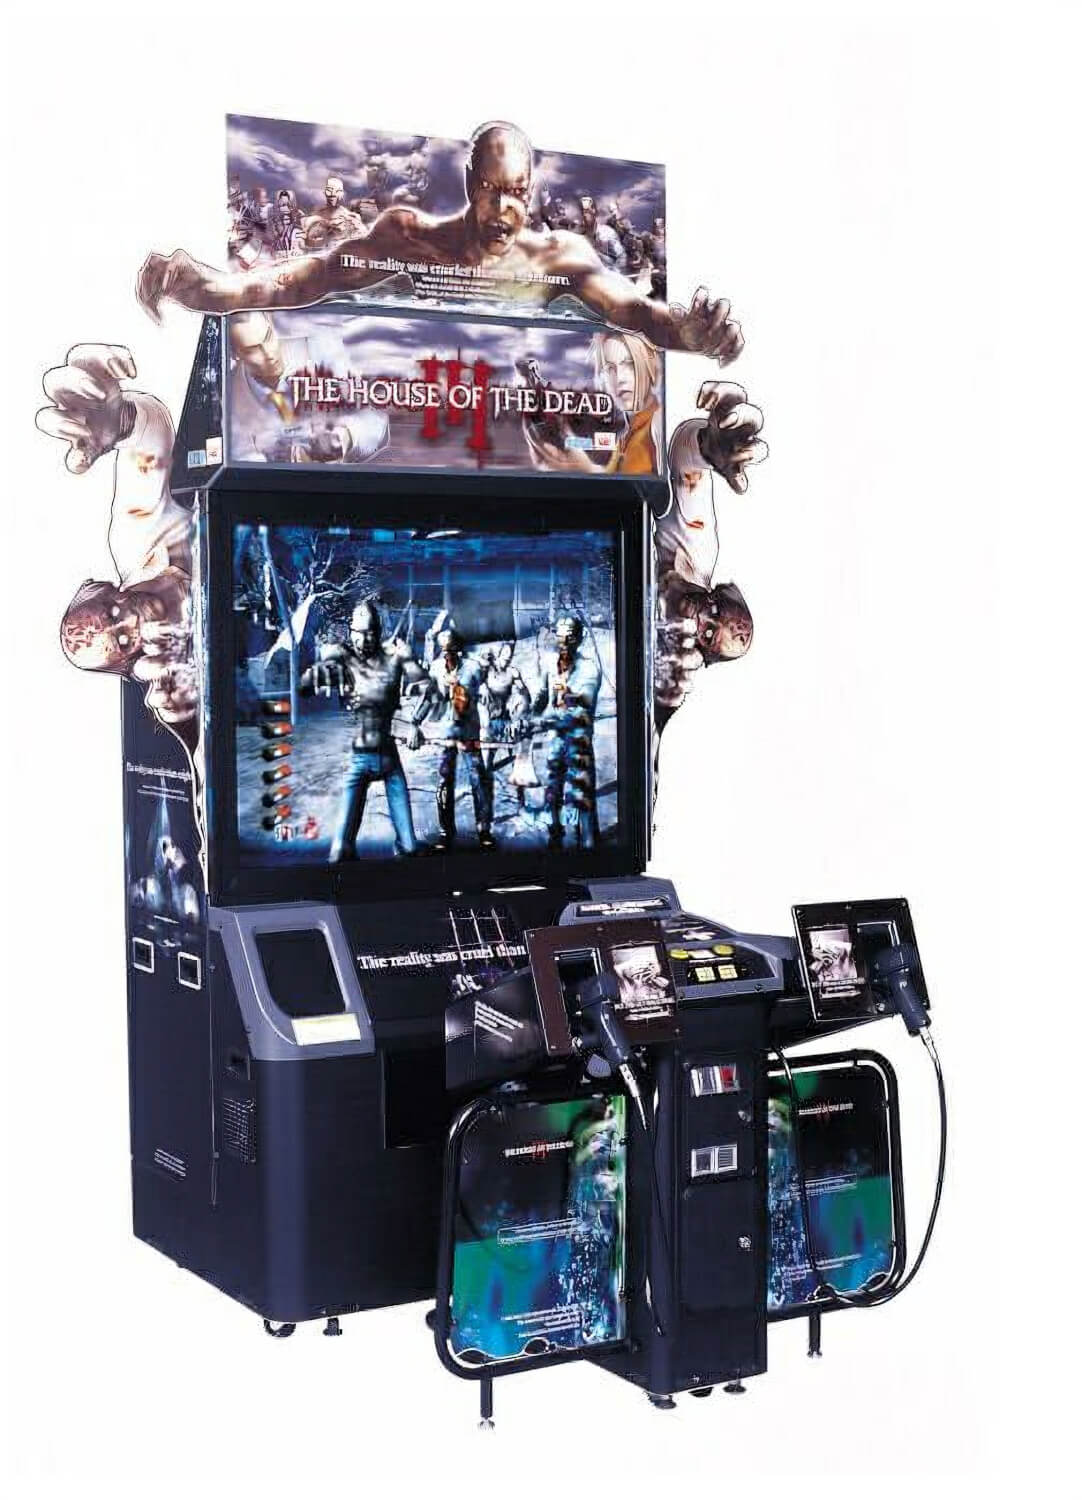 Craigslist antique slot machines for sale